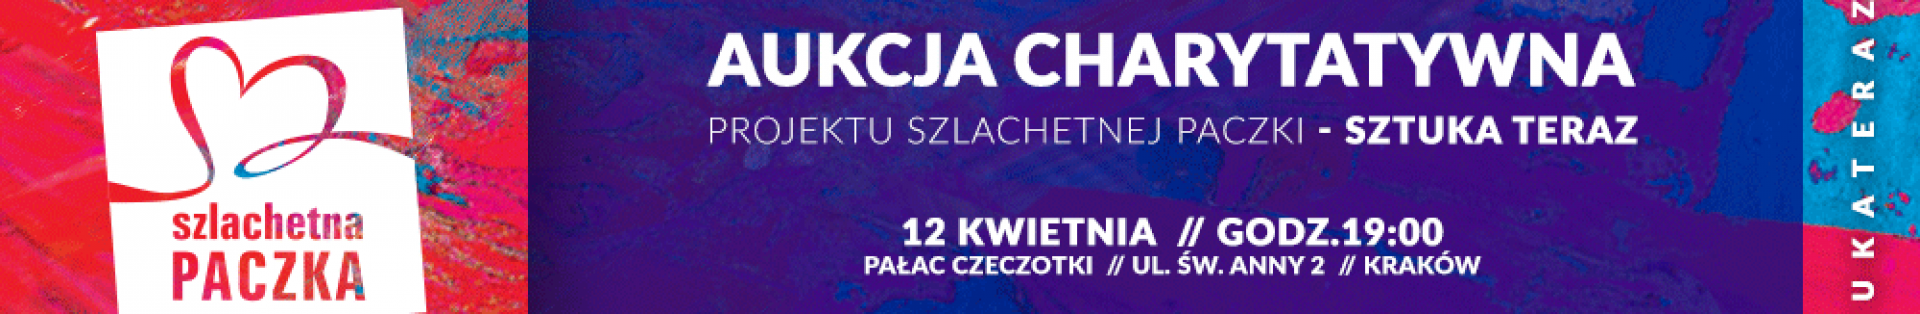 Sztuka Teraz w Krakowie. Aukcja Charytatywna dla Szlachetnej Paczki